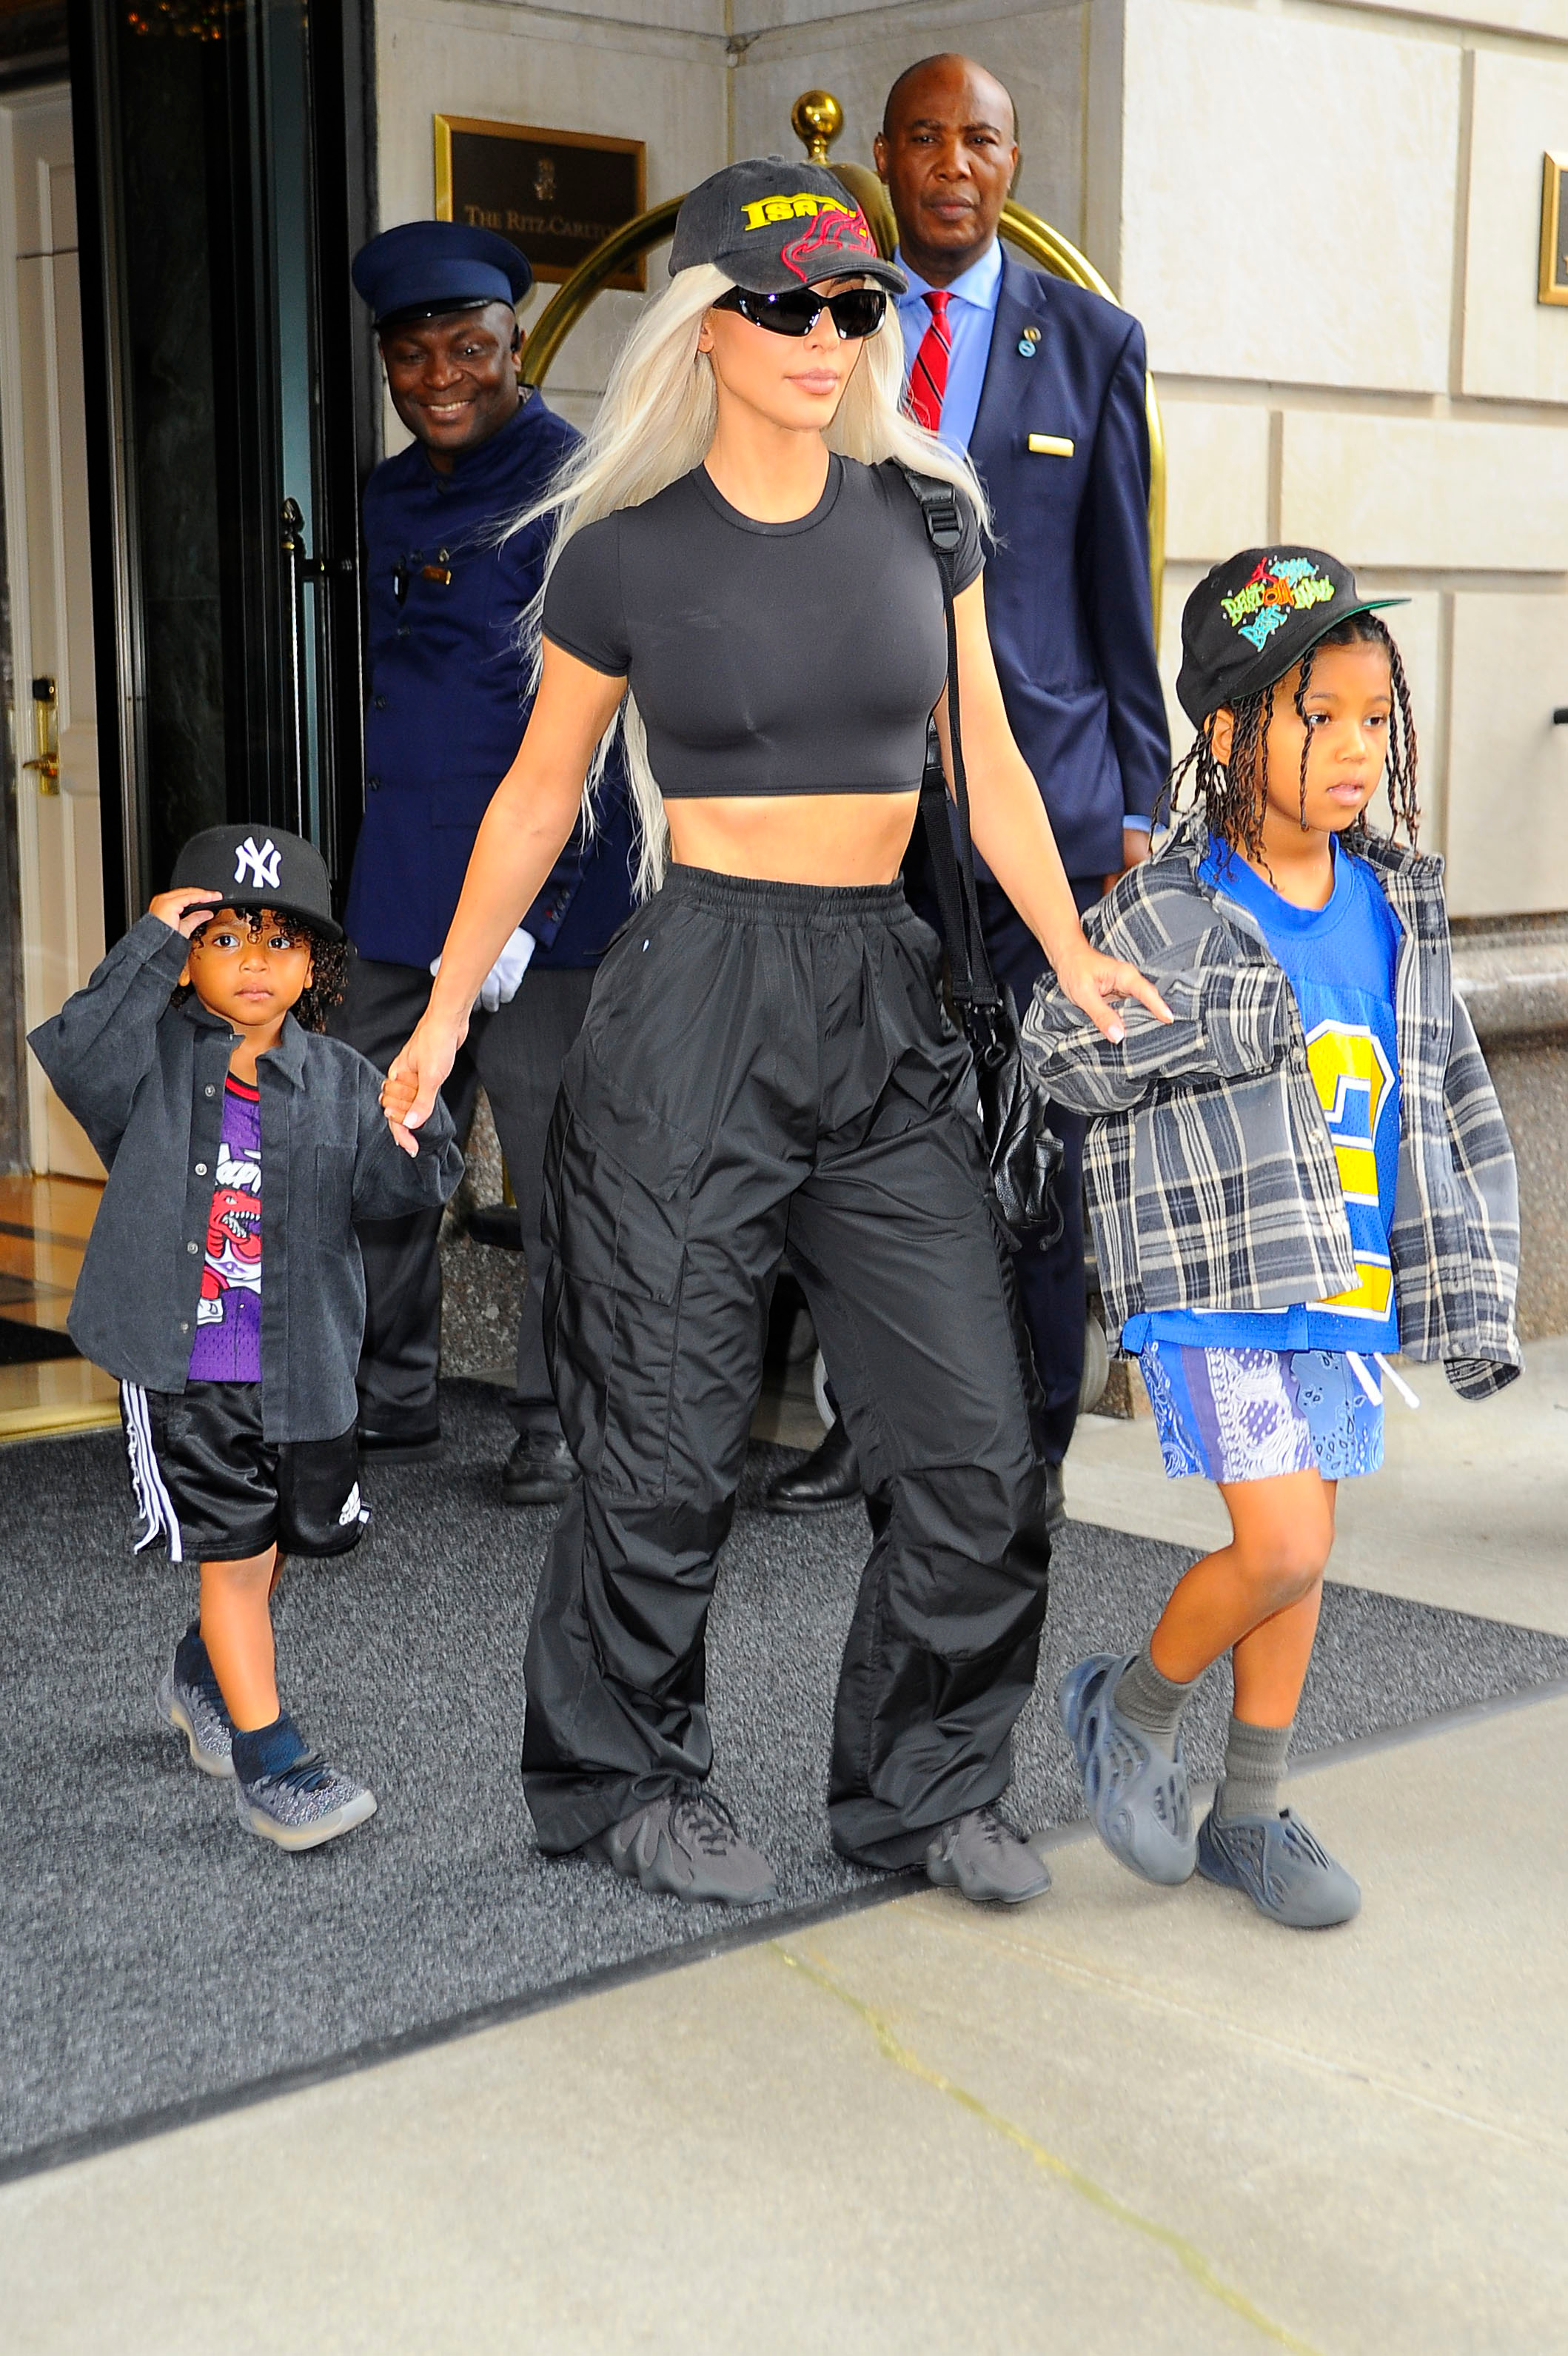 Paseo en familia. Kim Kardashian fue fotografiada cuando salía de su hotel en Nueva York acompañada por sus hijos Saint y Psalm. Lució un look total black de pantalón holgado, top, gorra, cartera y lentes de sol